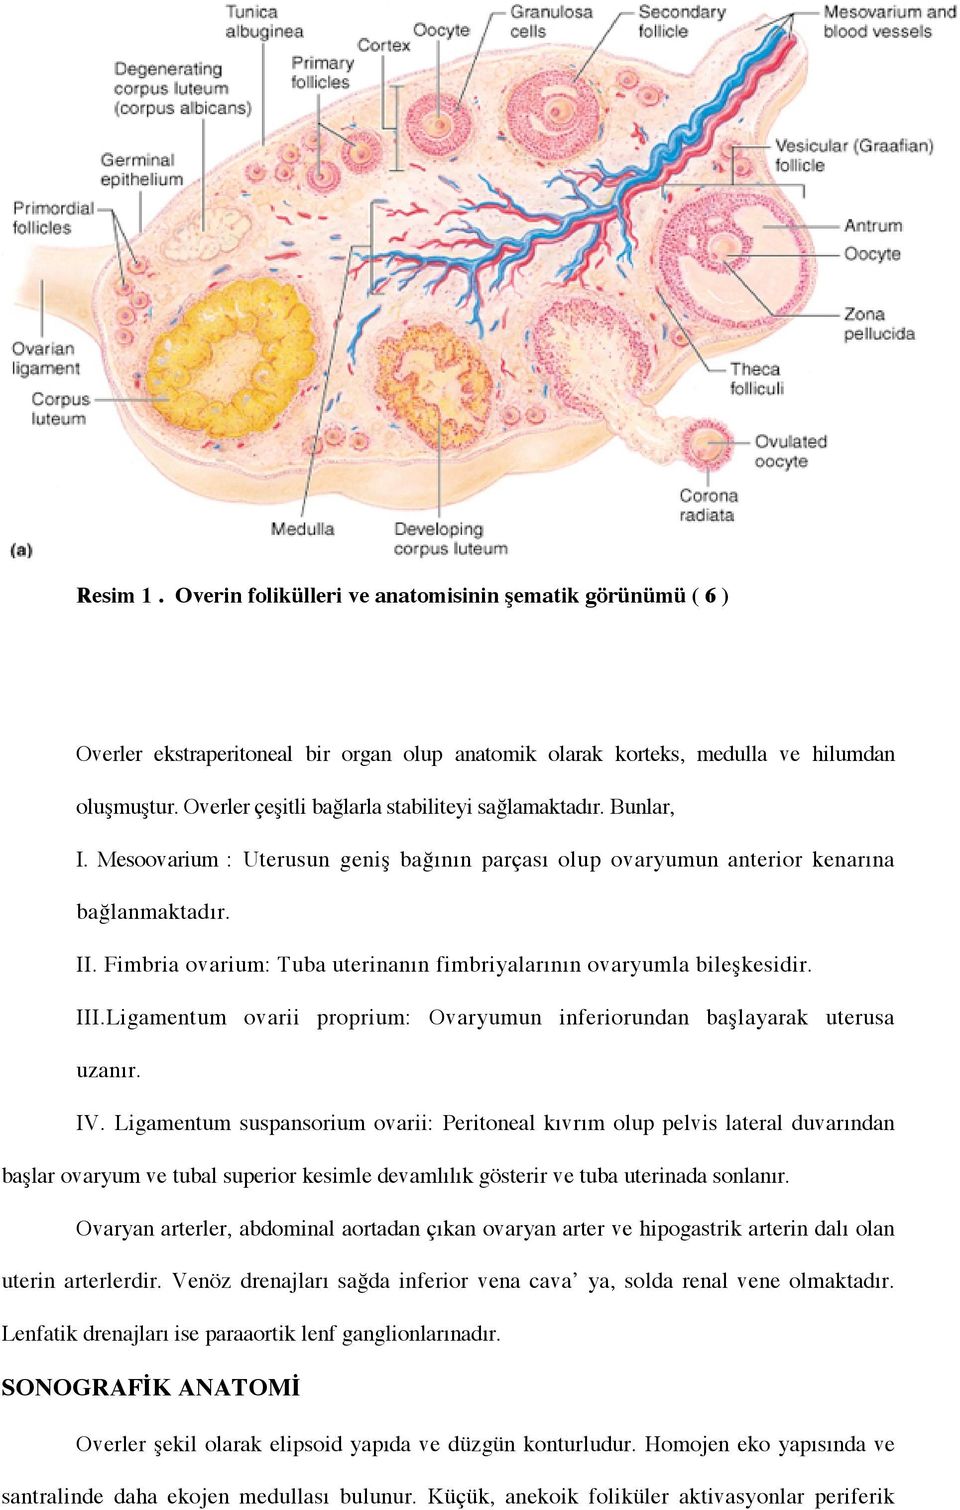 Fimbria ovarium: Tuba uterinanın fimbriyalarının ovaryumla bile$kesidir. III.Ligamentum ovarii proprium: Ovaryumun inferiorundan ba$layarak uterusa uzanır. IV.